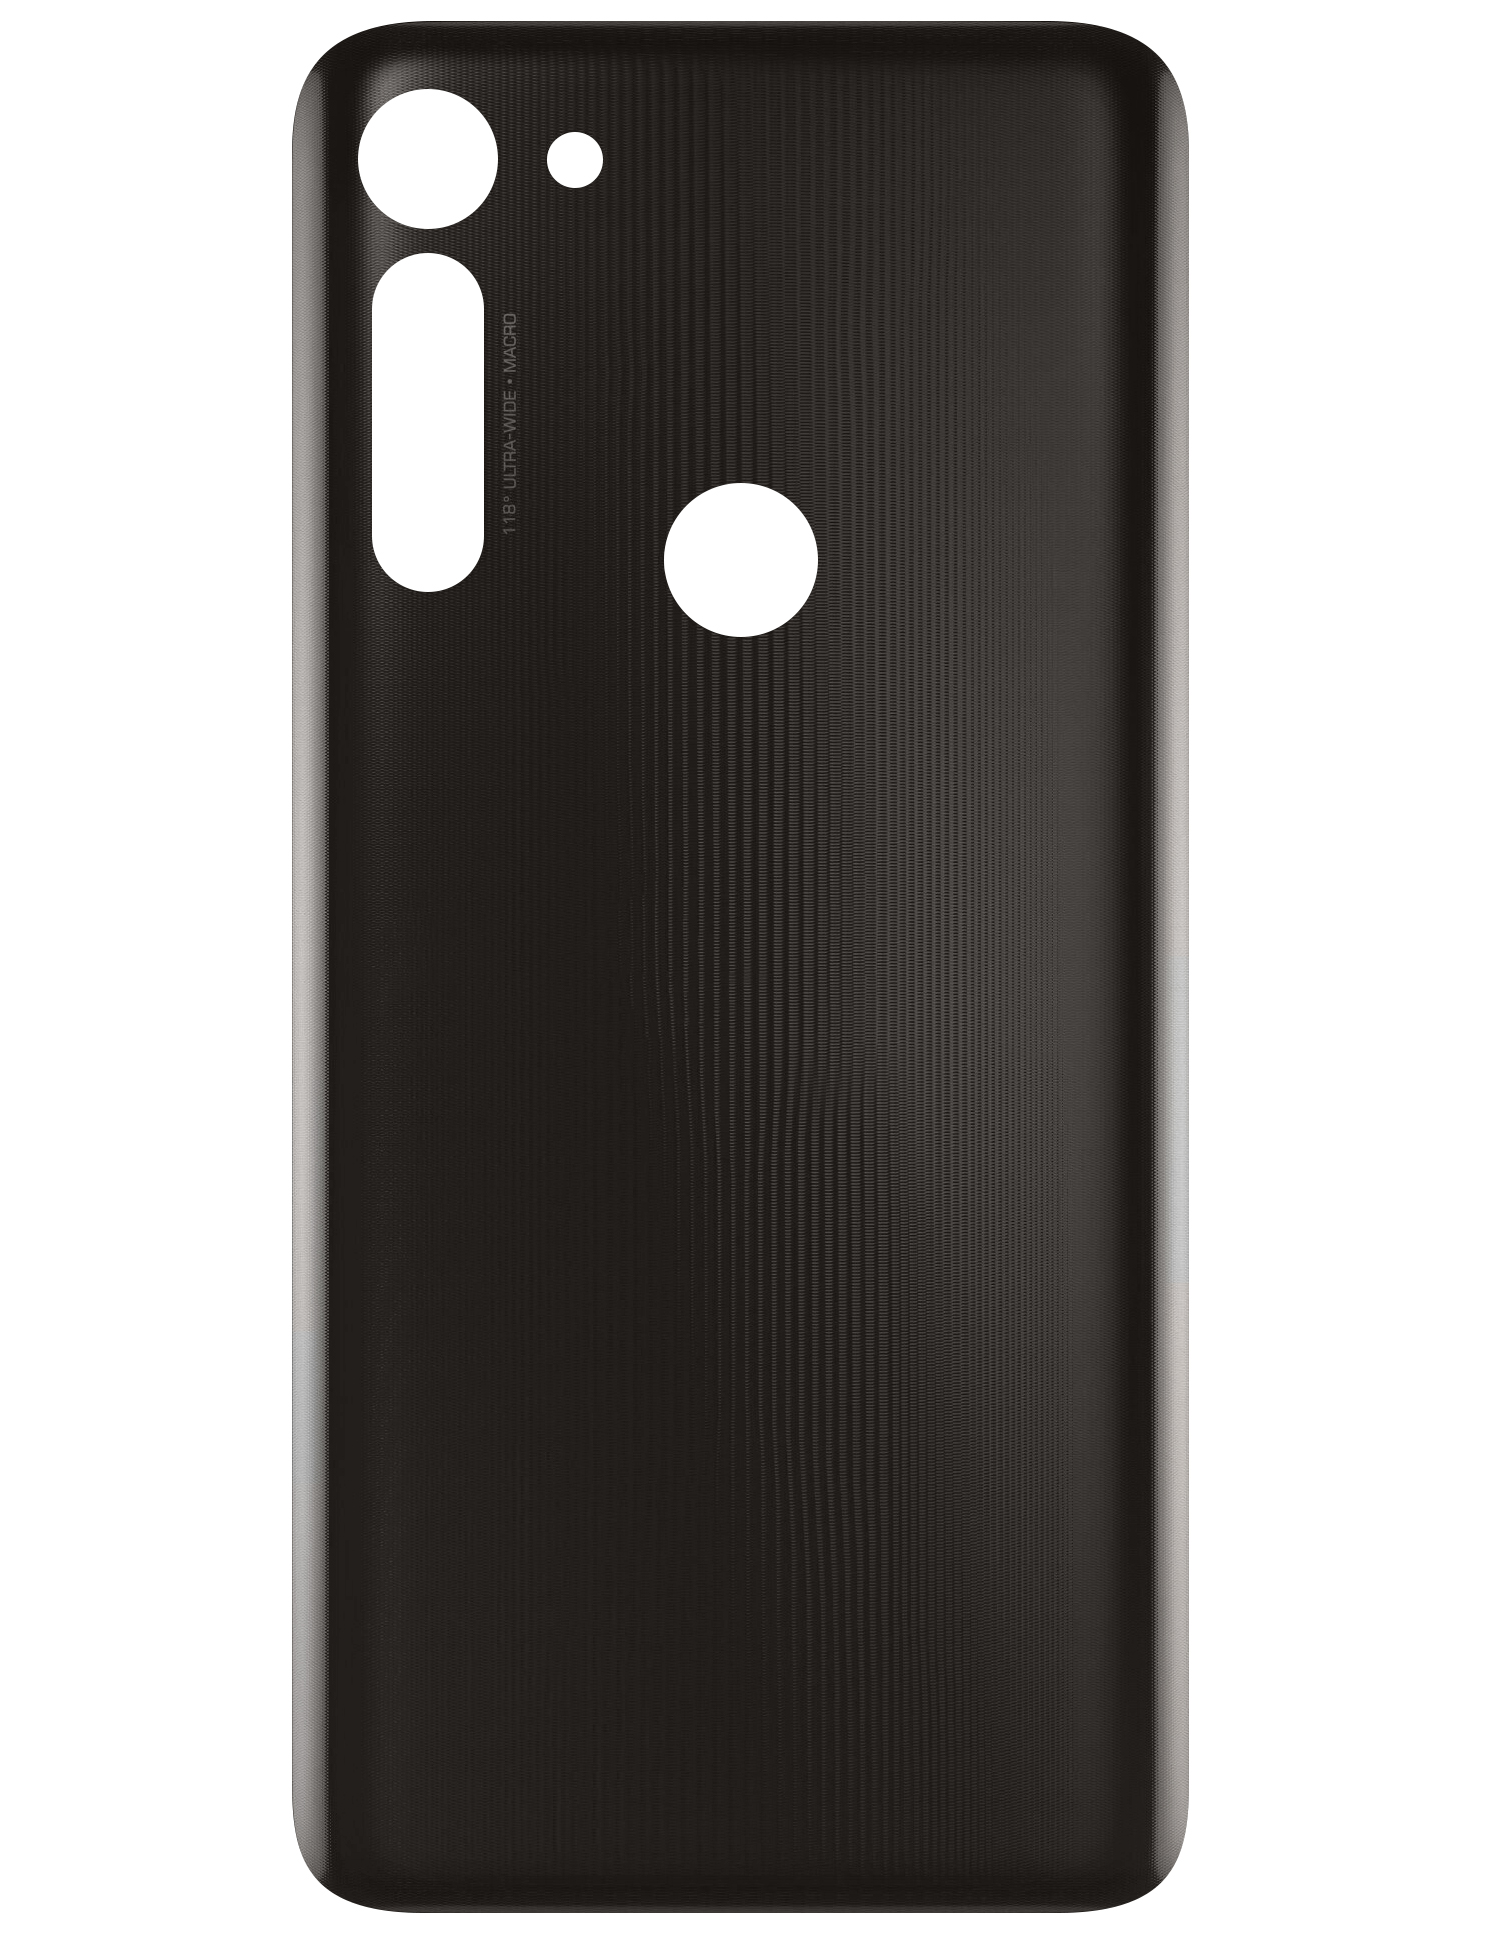 Battery Cover for Motorola Moto G8, Smoke Black